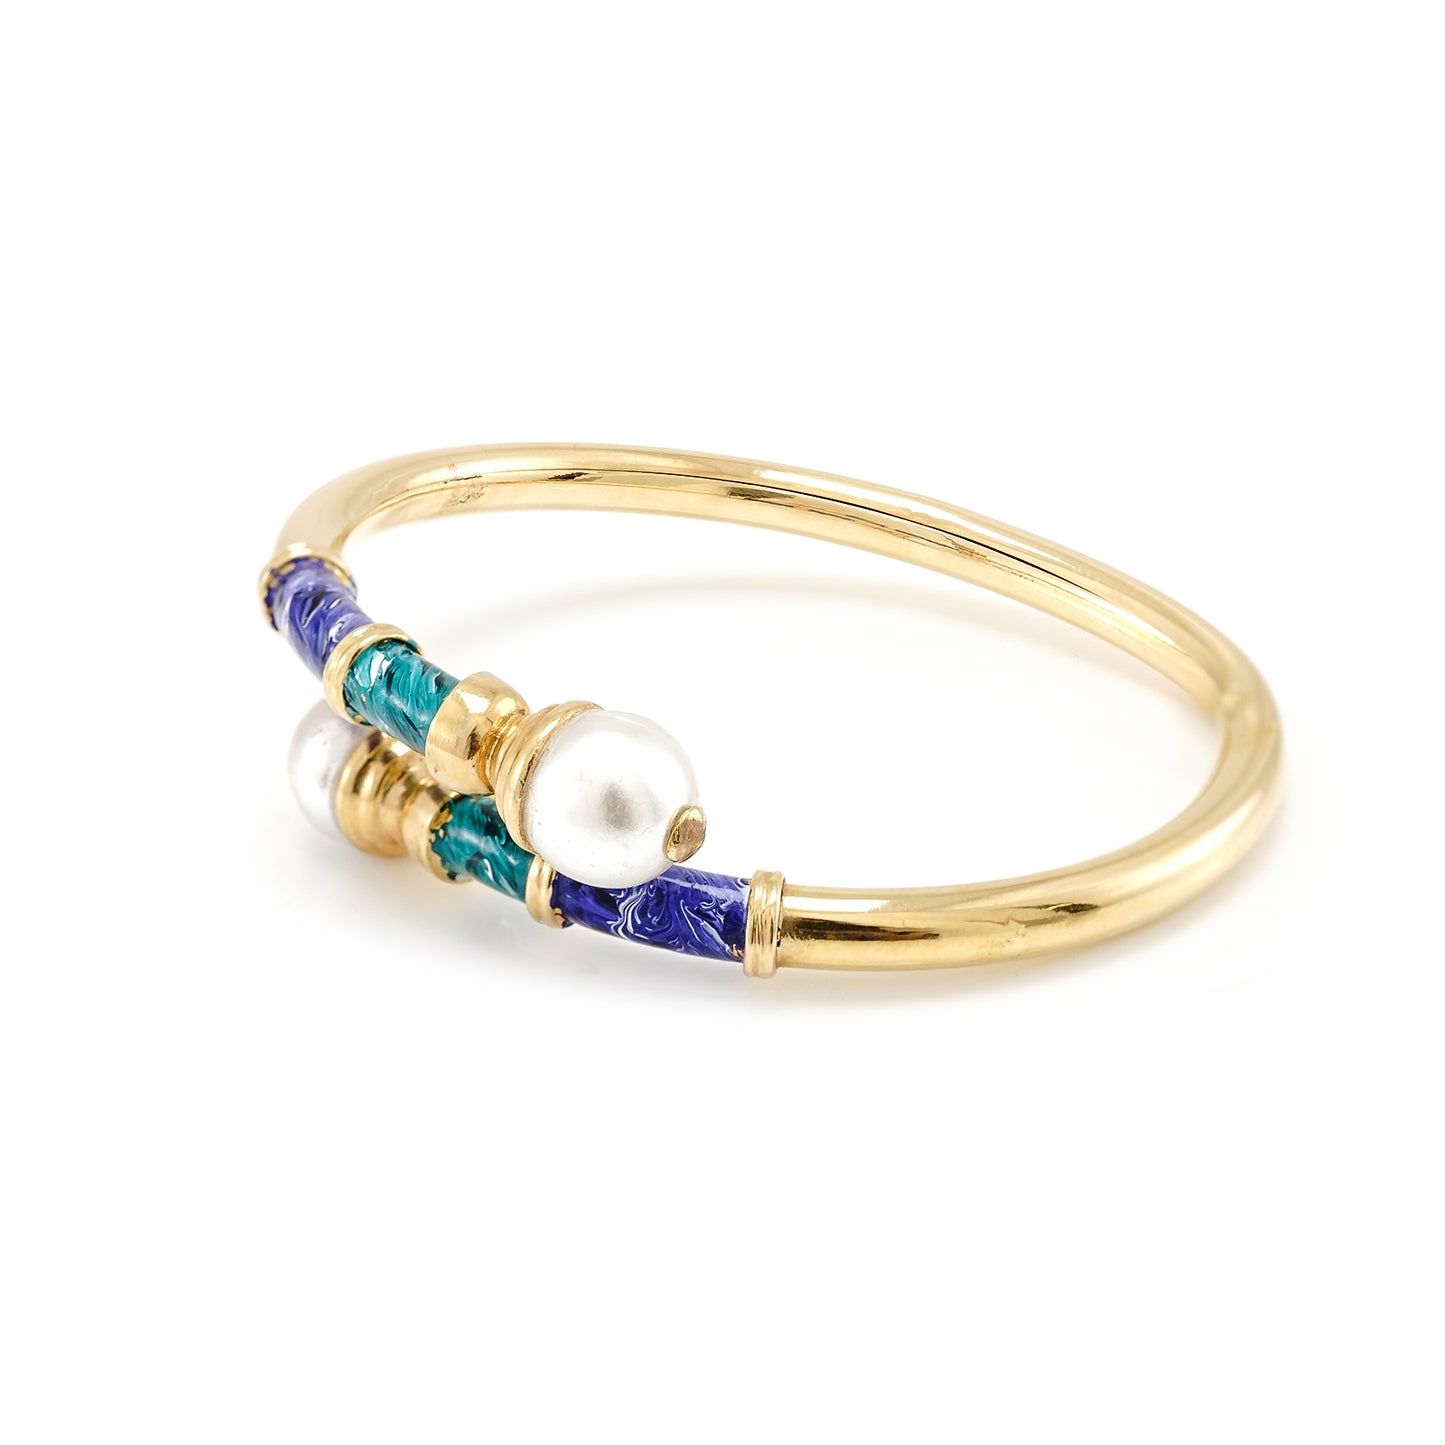 Antique bangle enamel pearl women's jewelry yellow gold 750 18K bracelet gold bracelet